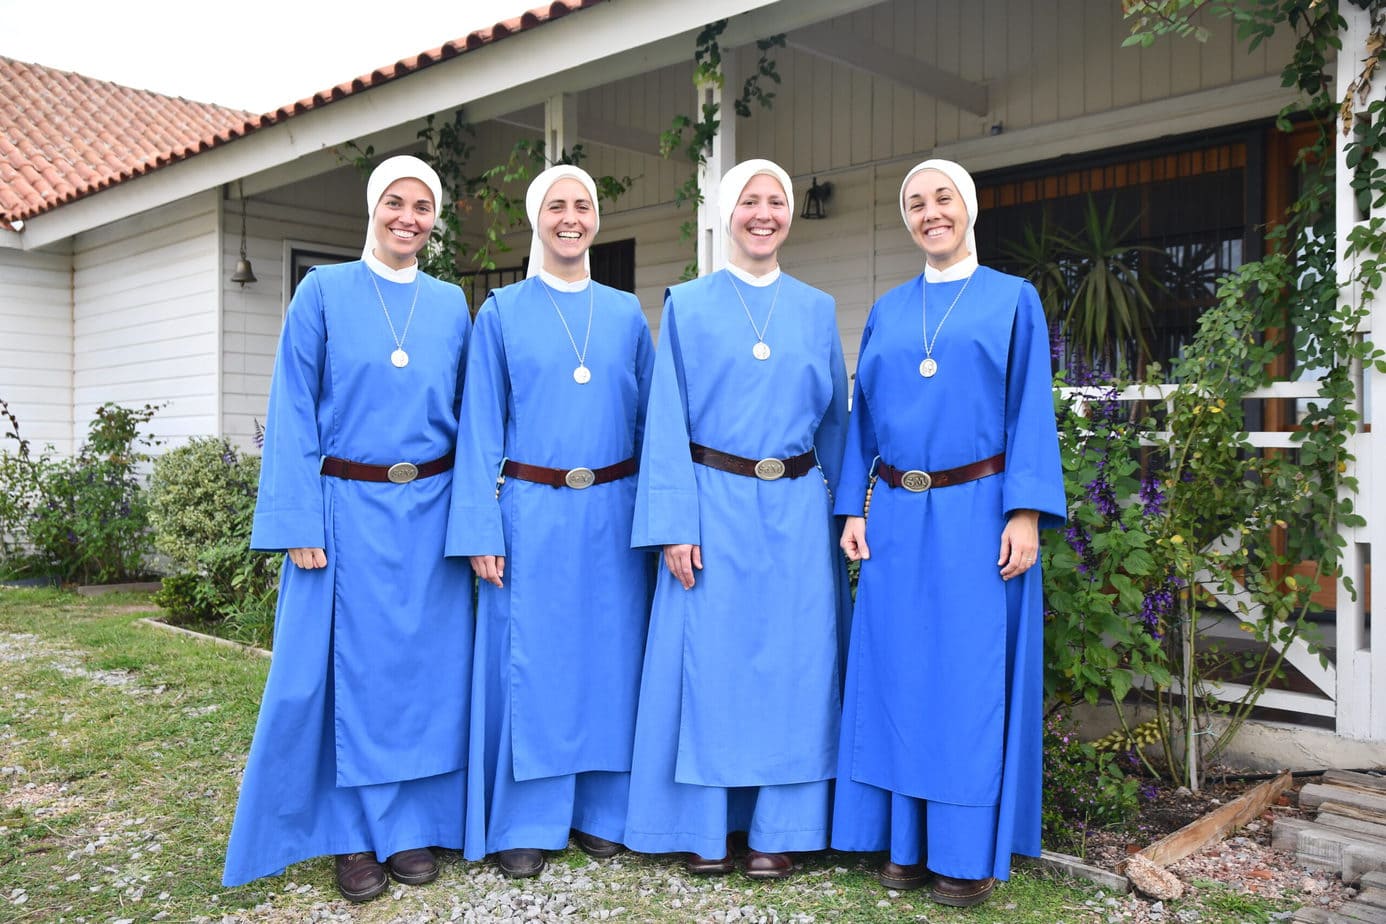 4 hermanas de la sociedad de maría posan con hábito azul